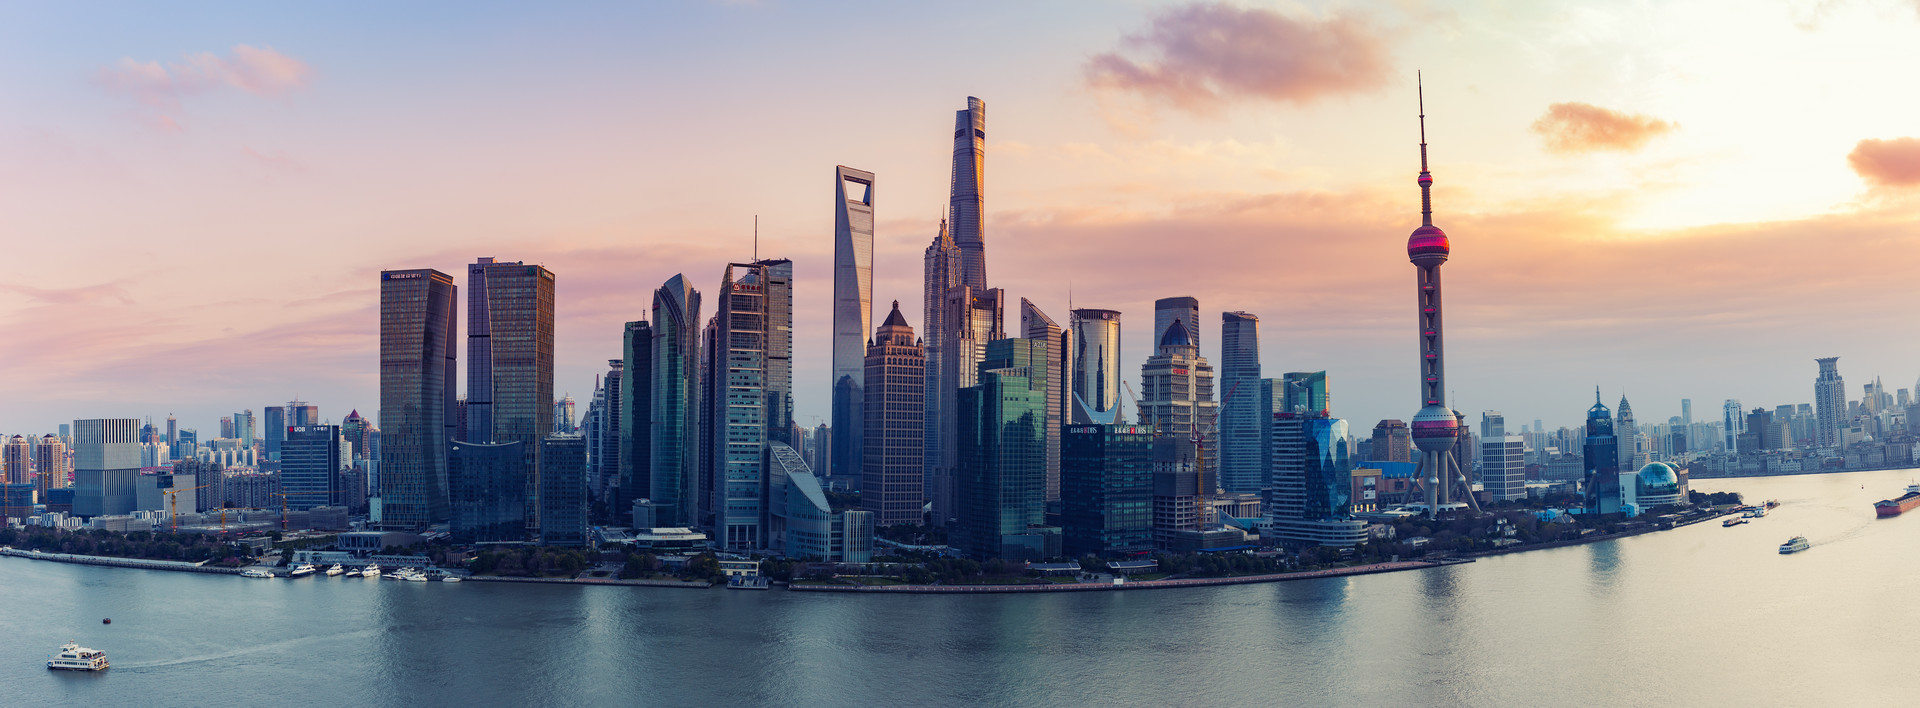 上海临港新片区发布50条金融创新措施 加快培育一批创新龙头企业上市科创板